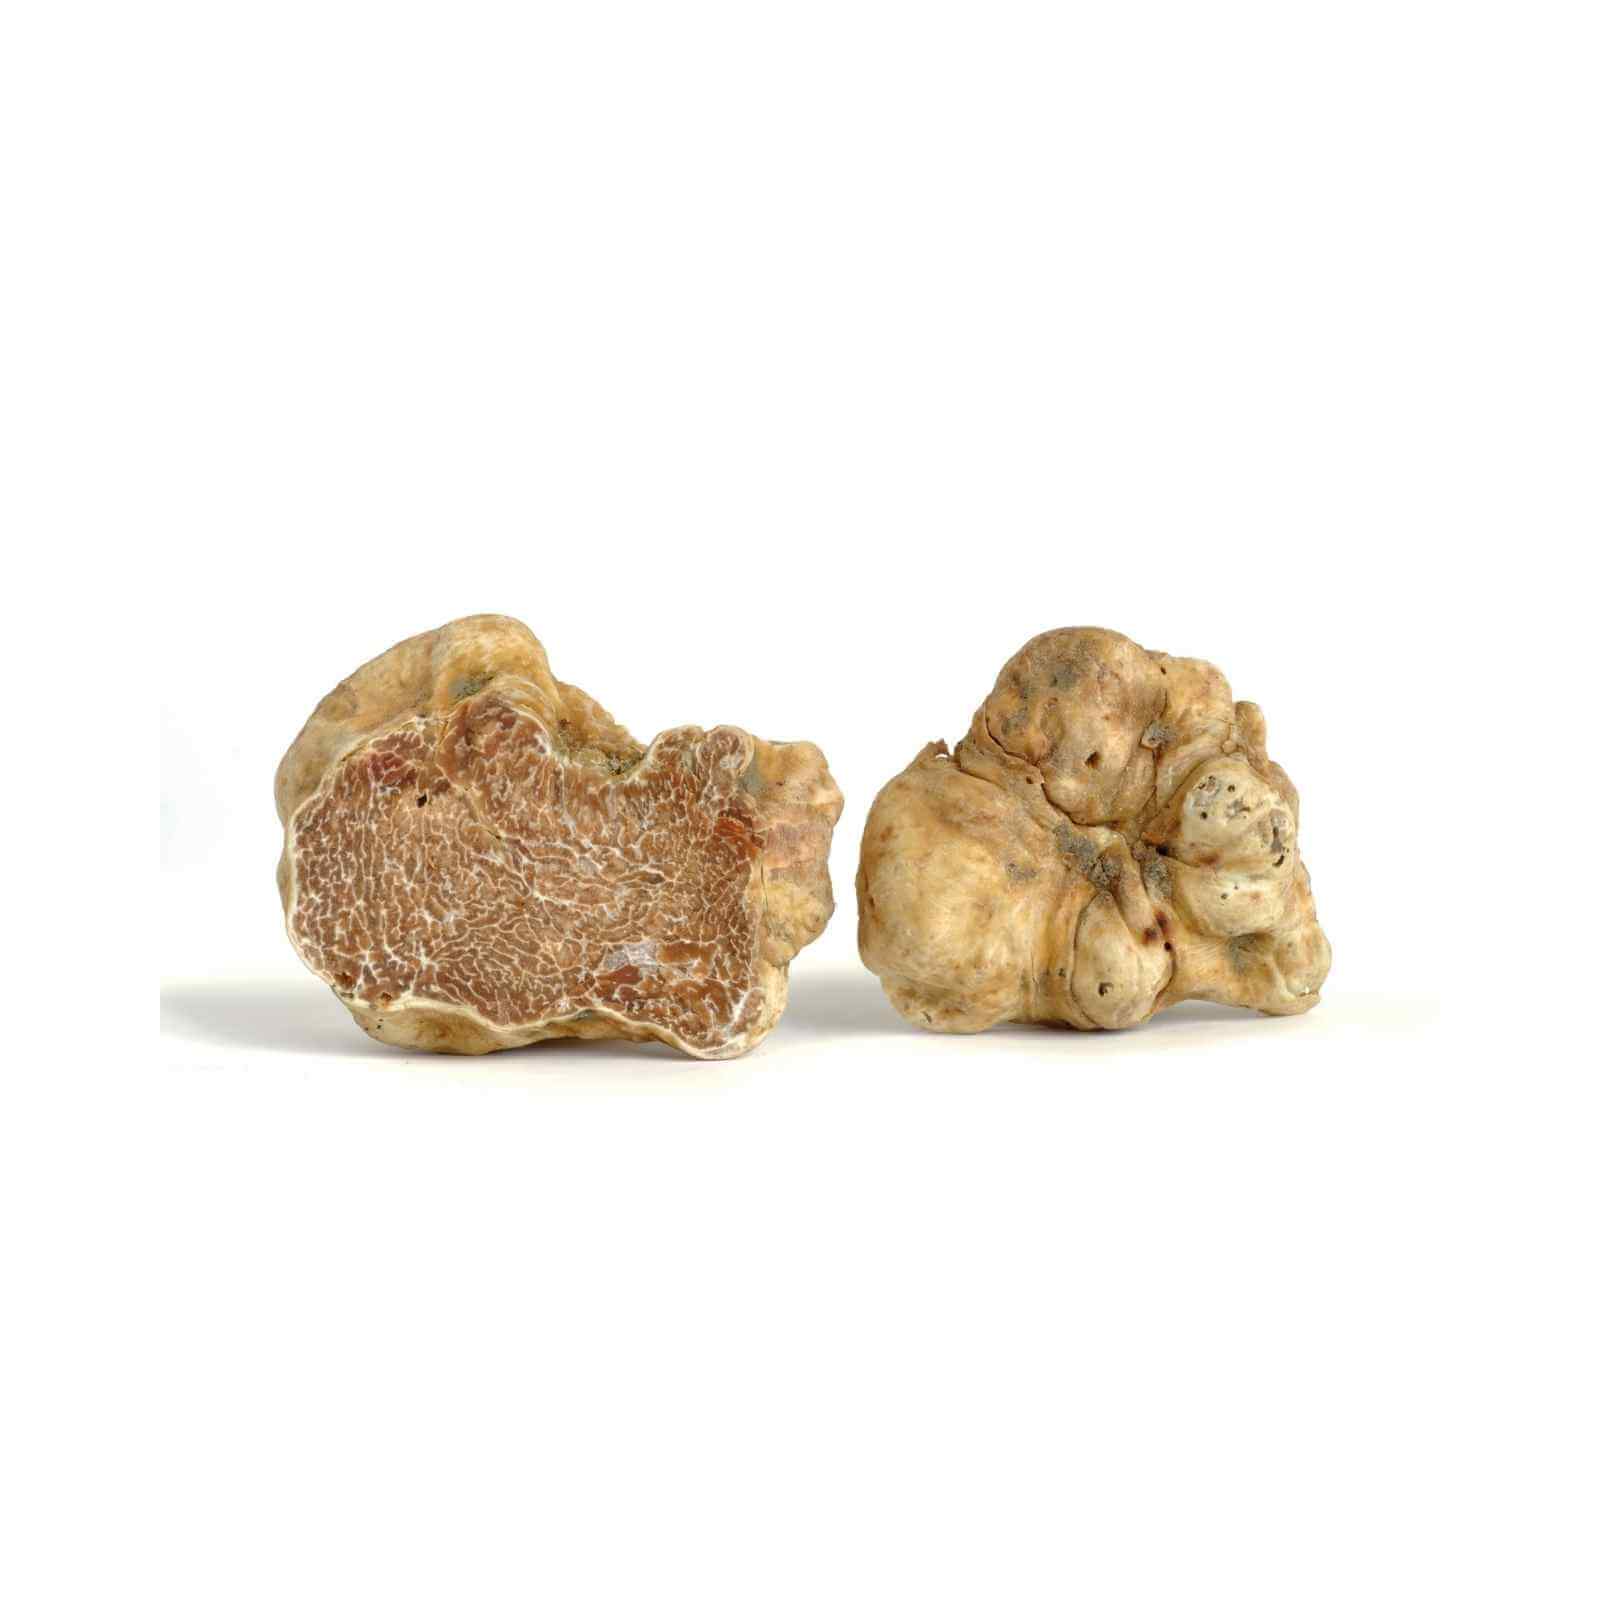 Alba White Truffles Tuber Magnatum Pico white truffles Slofoodgroup .5 oz 